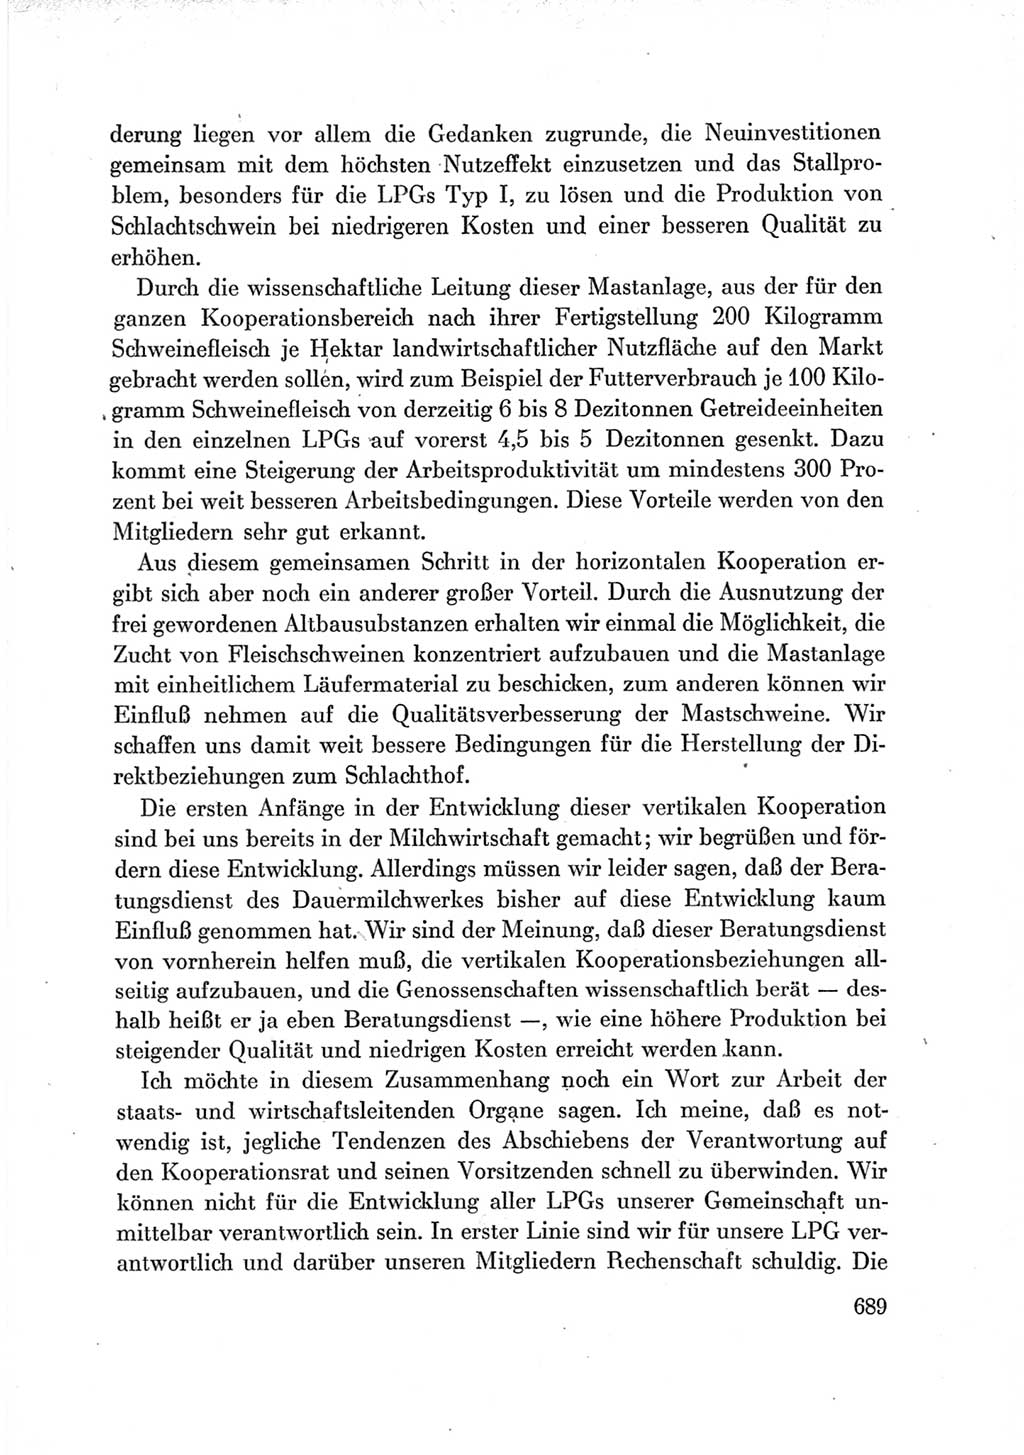 Protokoll der Verhandlungen des Ⅶ. Parteitages der Sozialistischen Einheitspartei Deutschlands (SED) [Deutsche Demokratische Republik (DDR)] 1967, Band Ⅲ, Seite 689 (Prot. Verh. Ⅶ. PT SED DDR 1967, Bd. Ⅲ, S. 689)